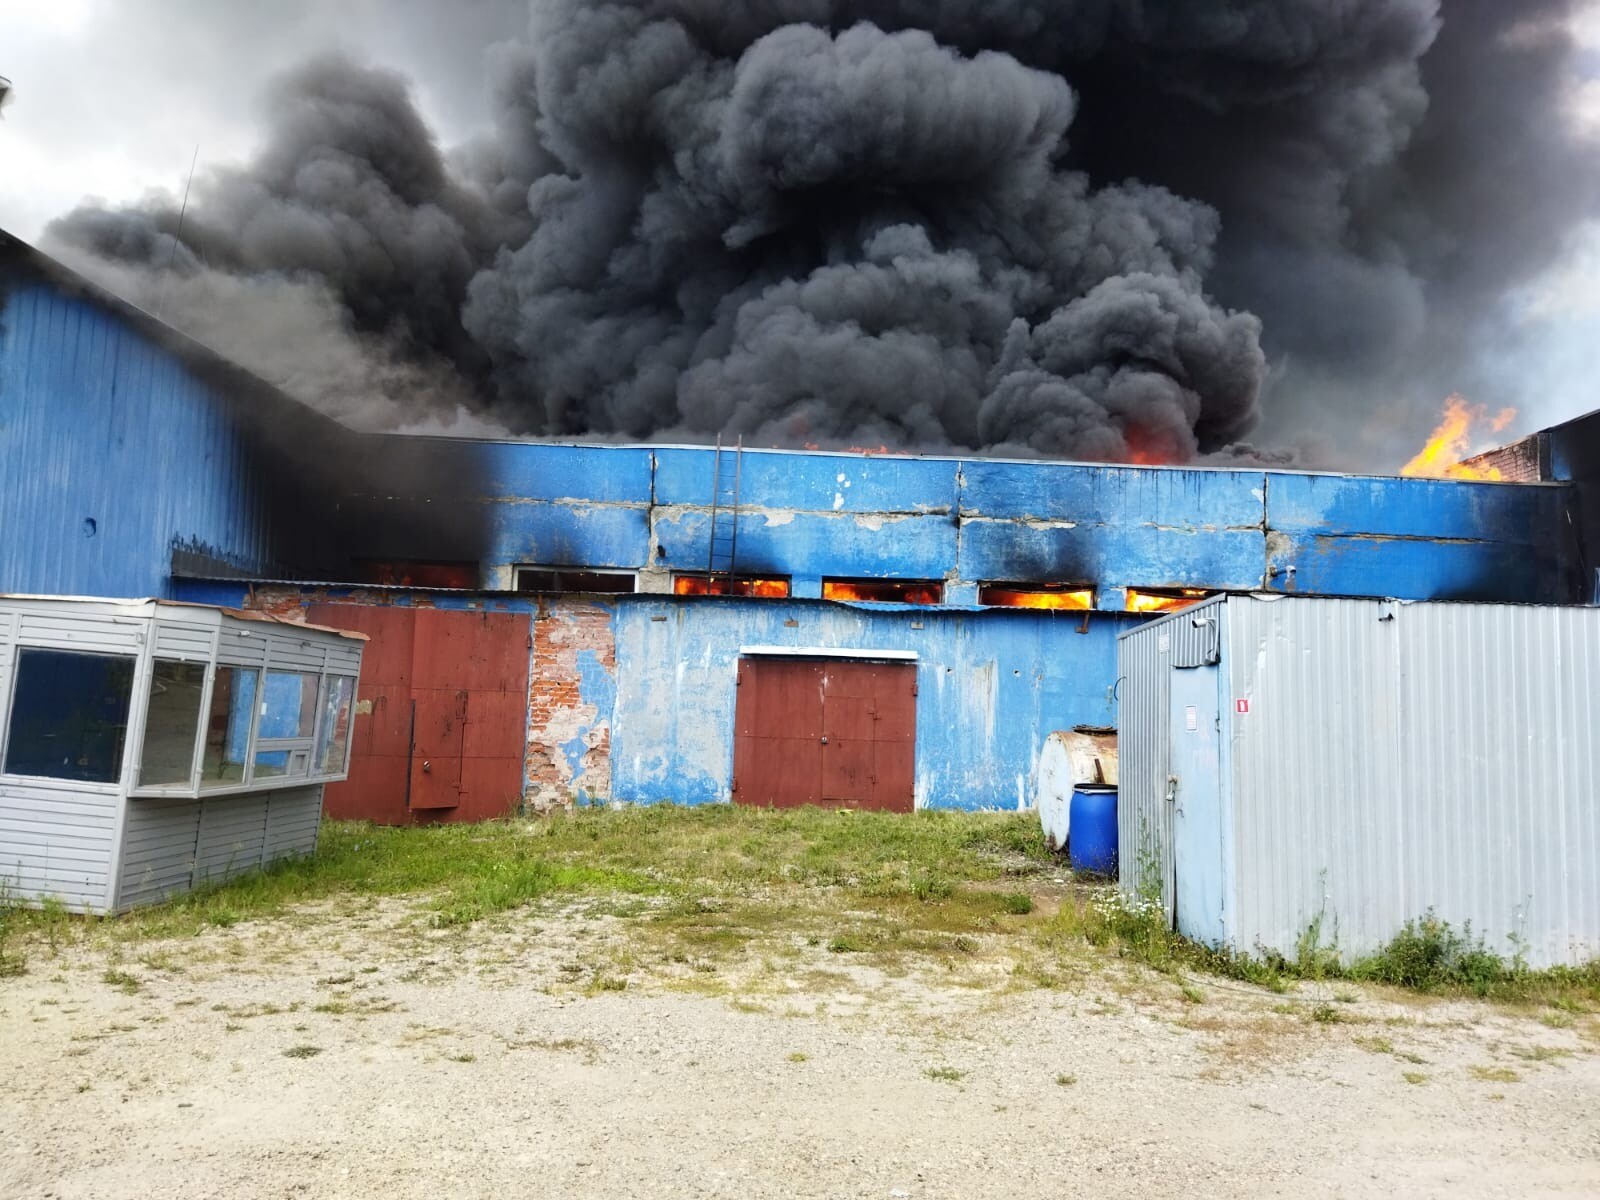 Производственный склад горит в Казани